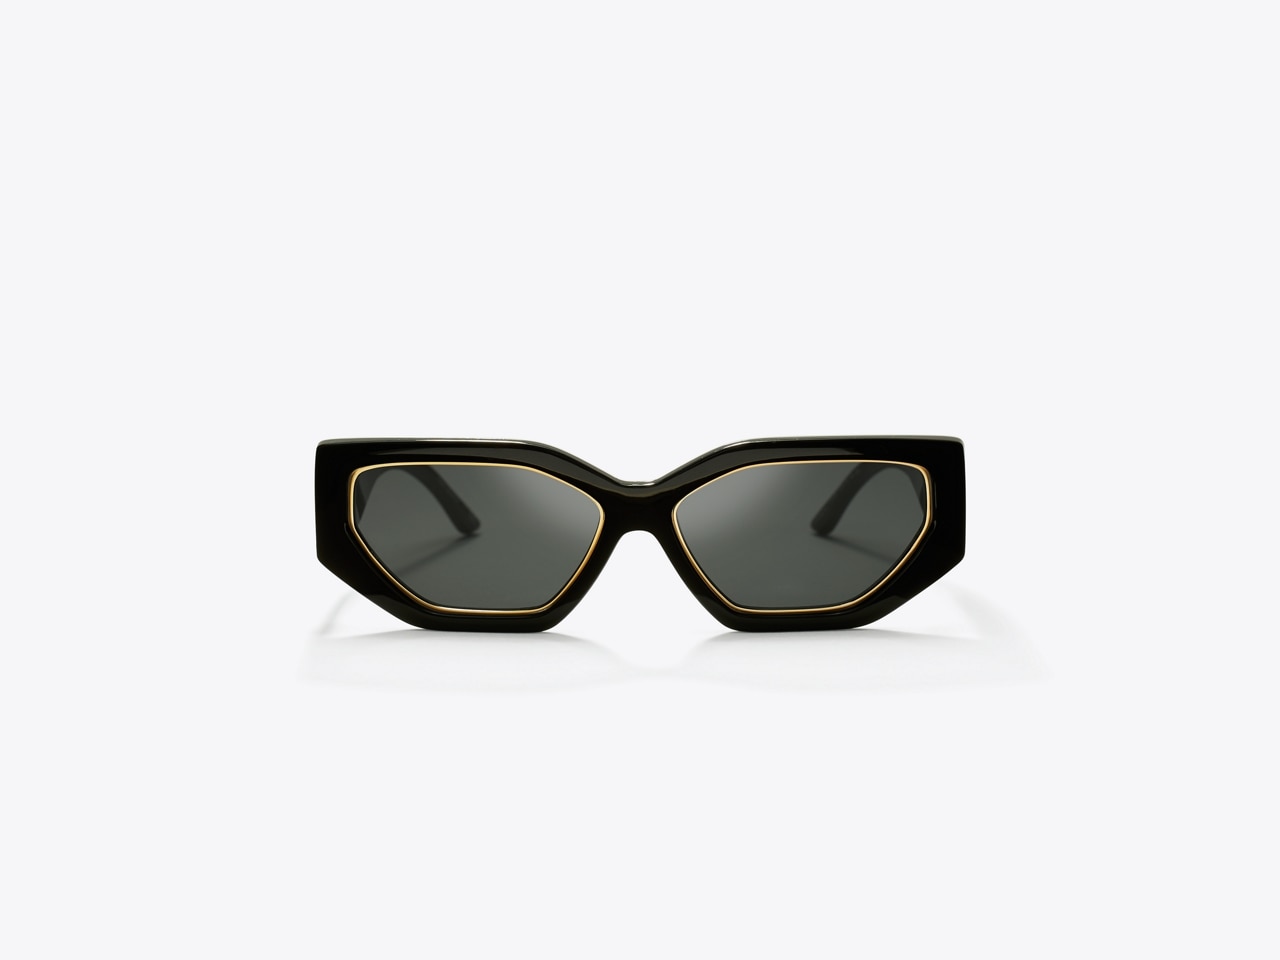 Tory Burch Kira Cat-eye Sunglasses in White